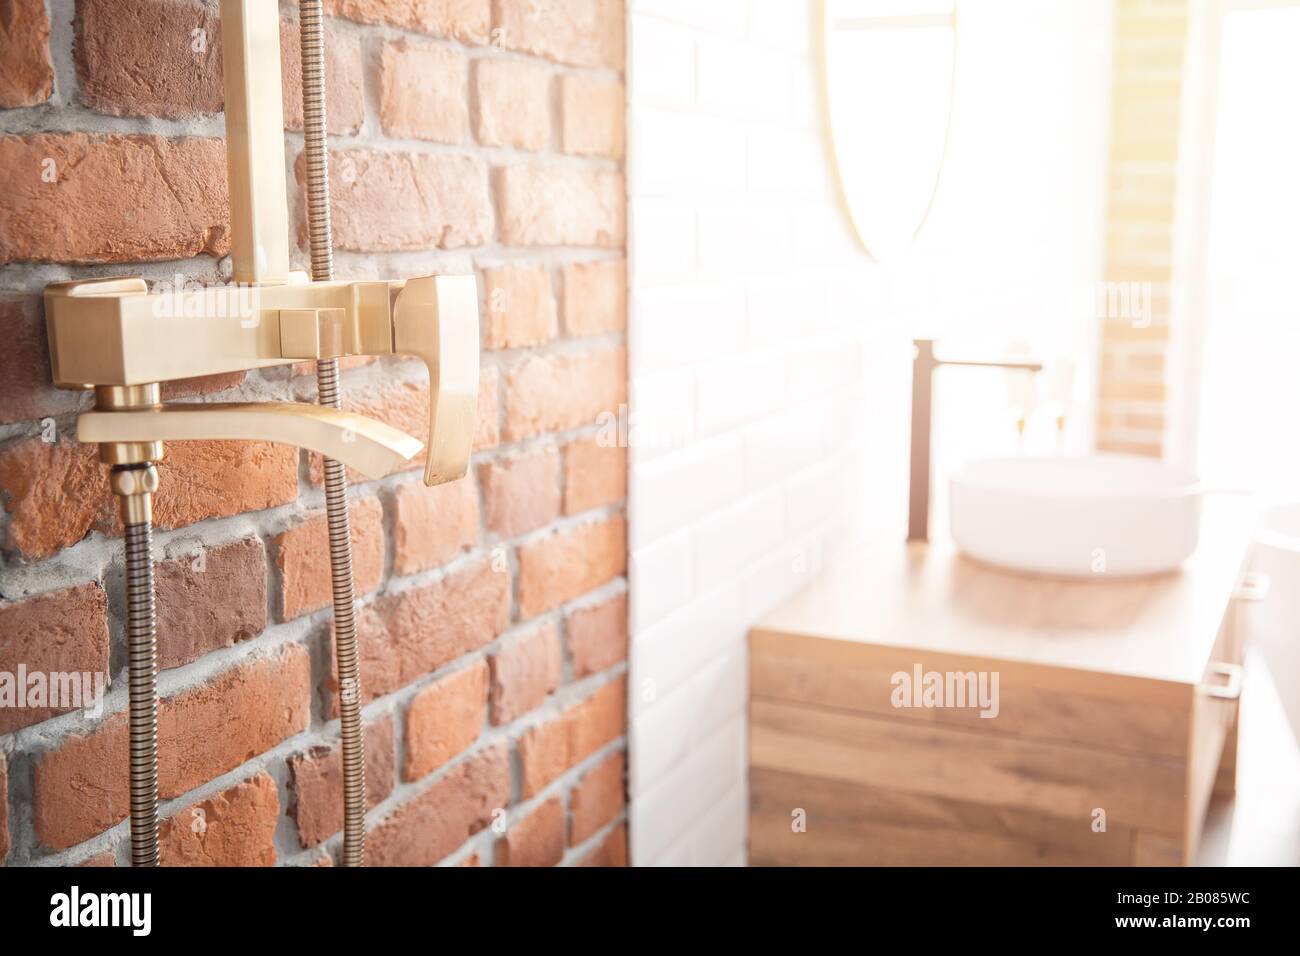 Moderno sistema de ducha de color cobre para el baño en estilo loft, pared de ladrillo. Ventana de luz solar Foto de stock